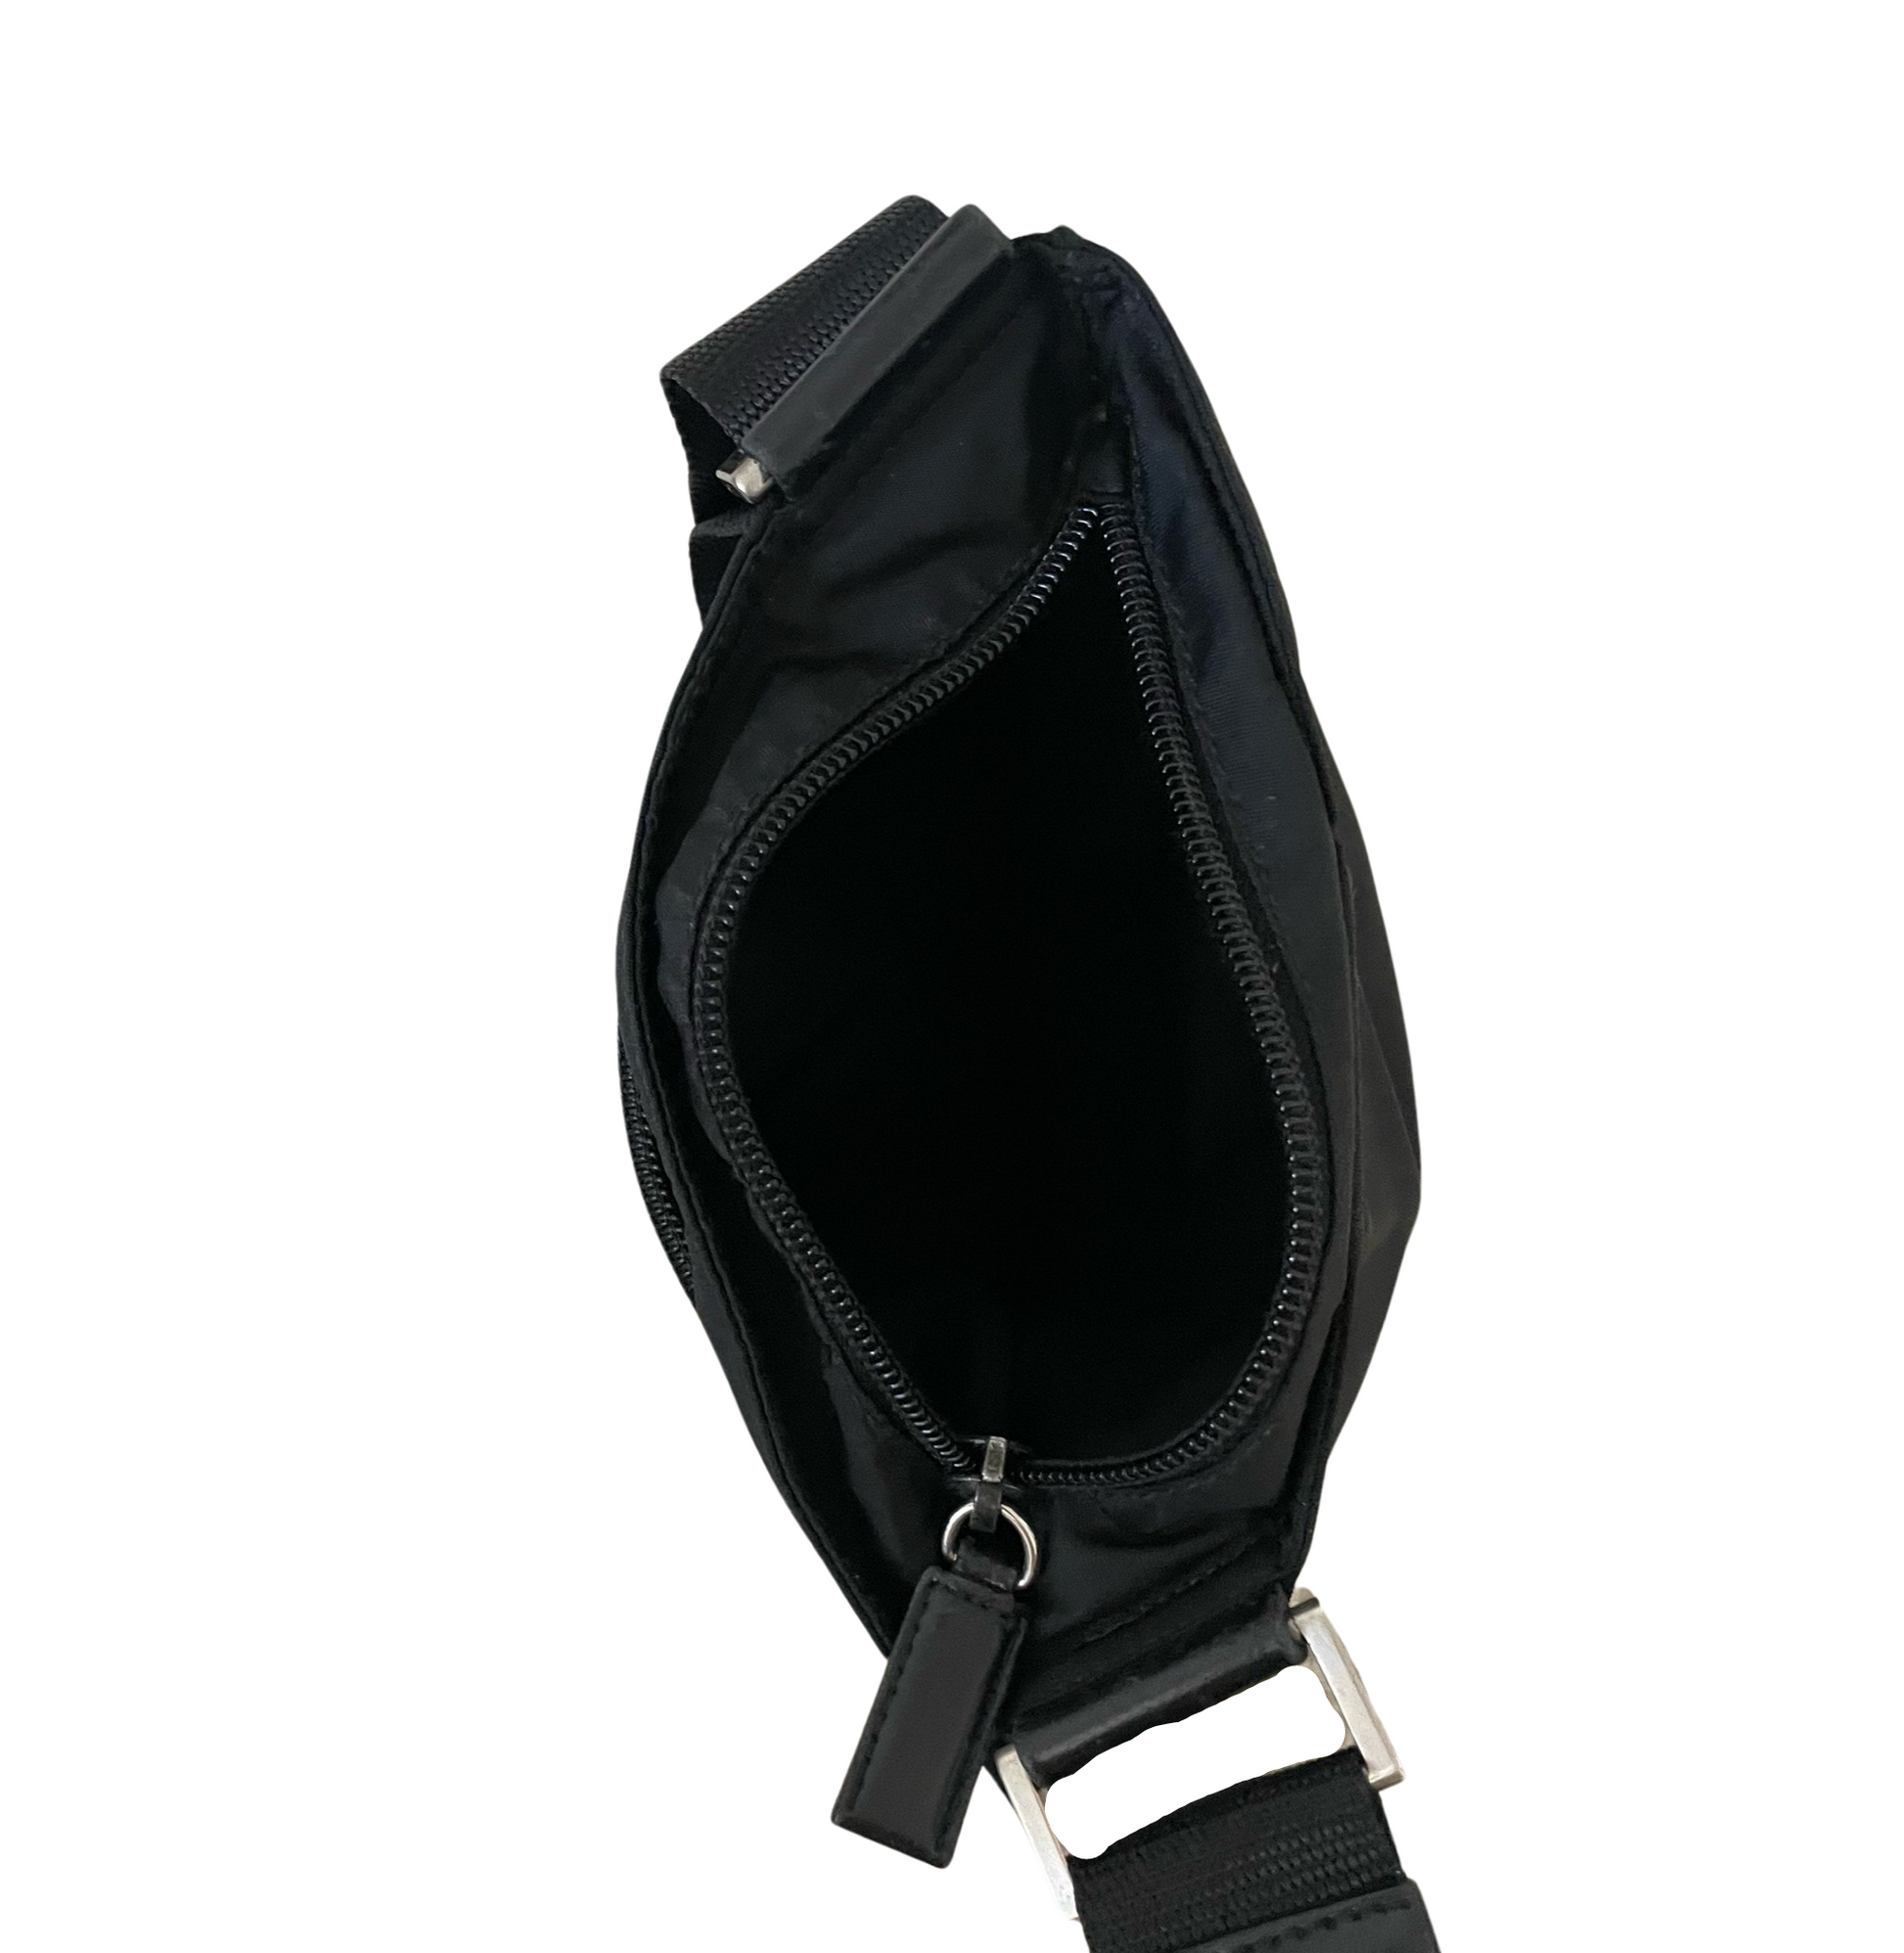 กระเป๋าสะพายPRADA Saffiano Leather Prada Monochrome Bag Powder Pink(NEW)